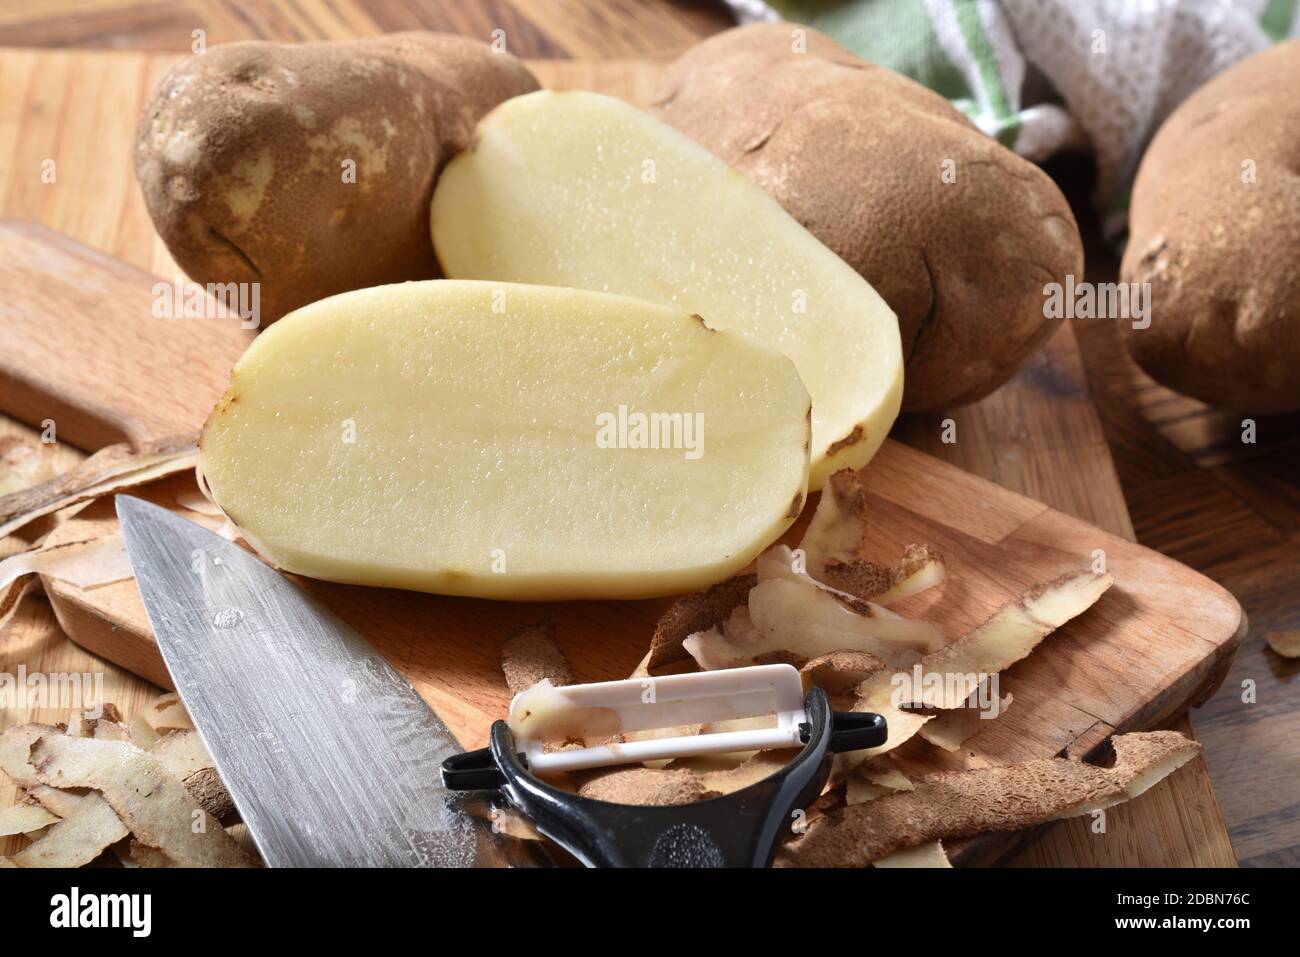 En pommes de terre Russet pelées et coupées sur une planche à découper Banque D'Images